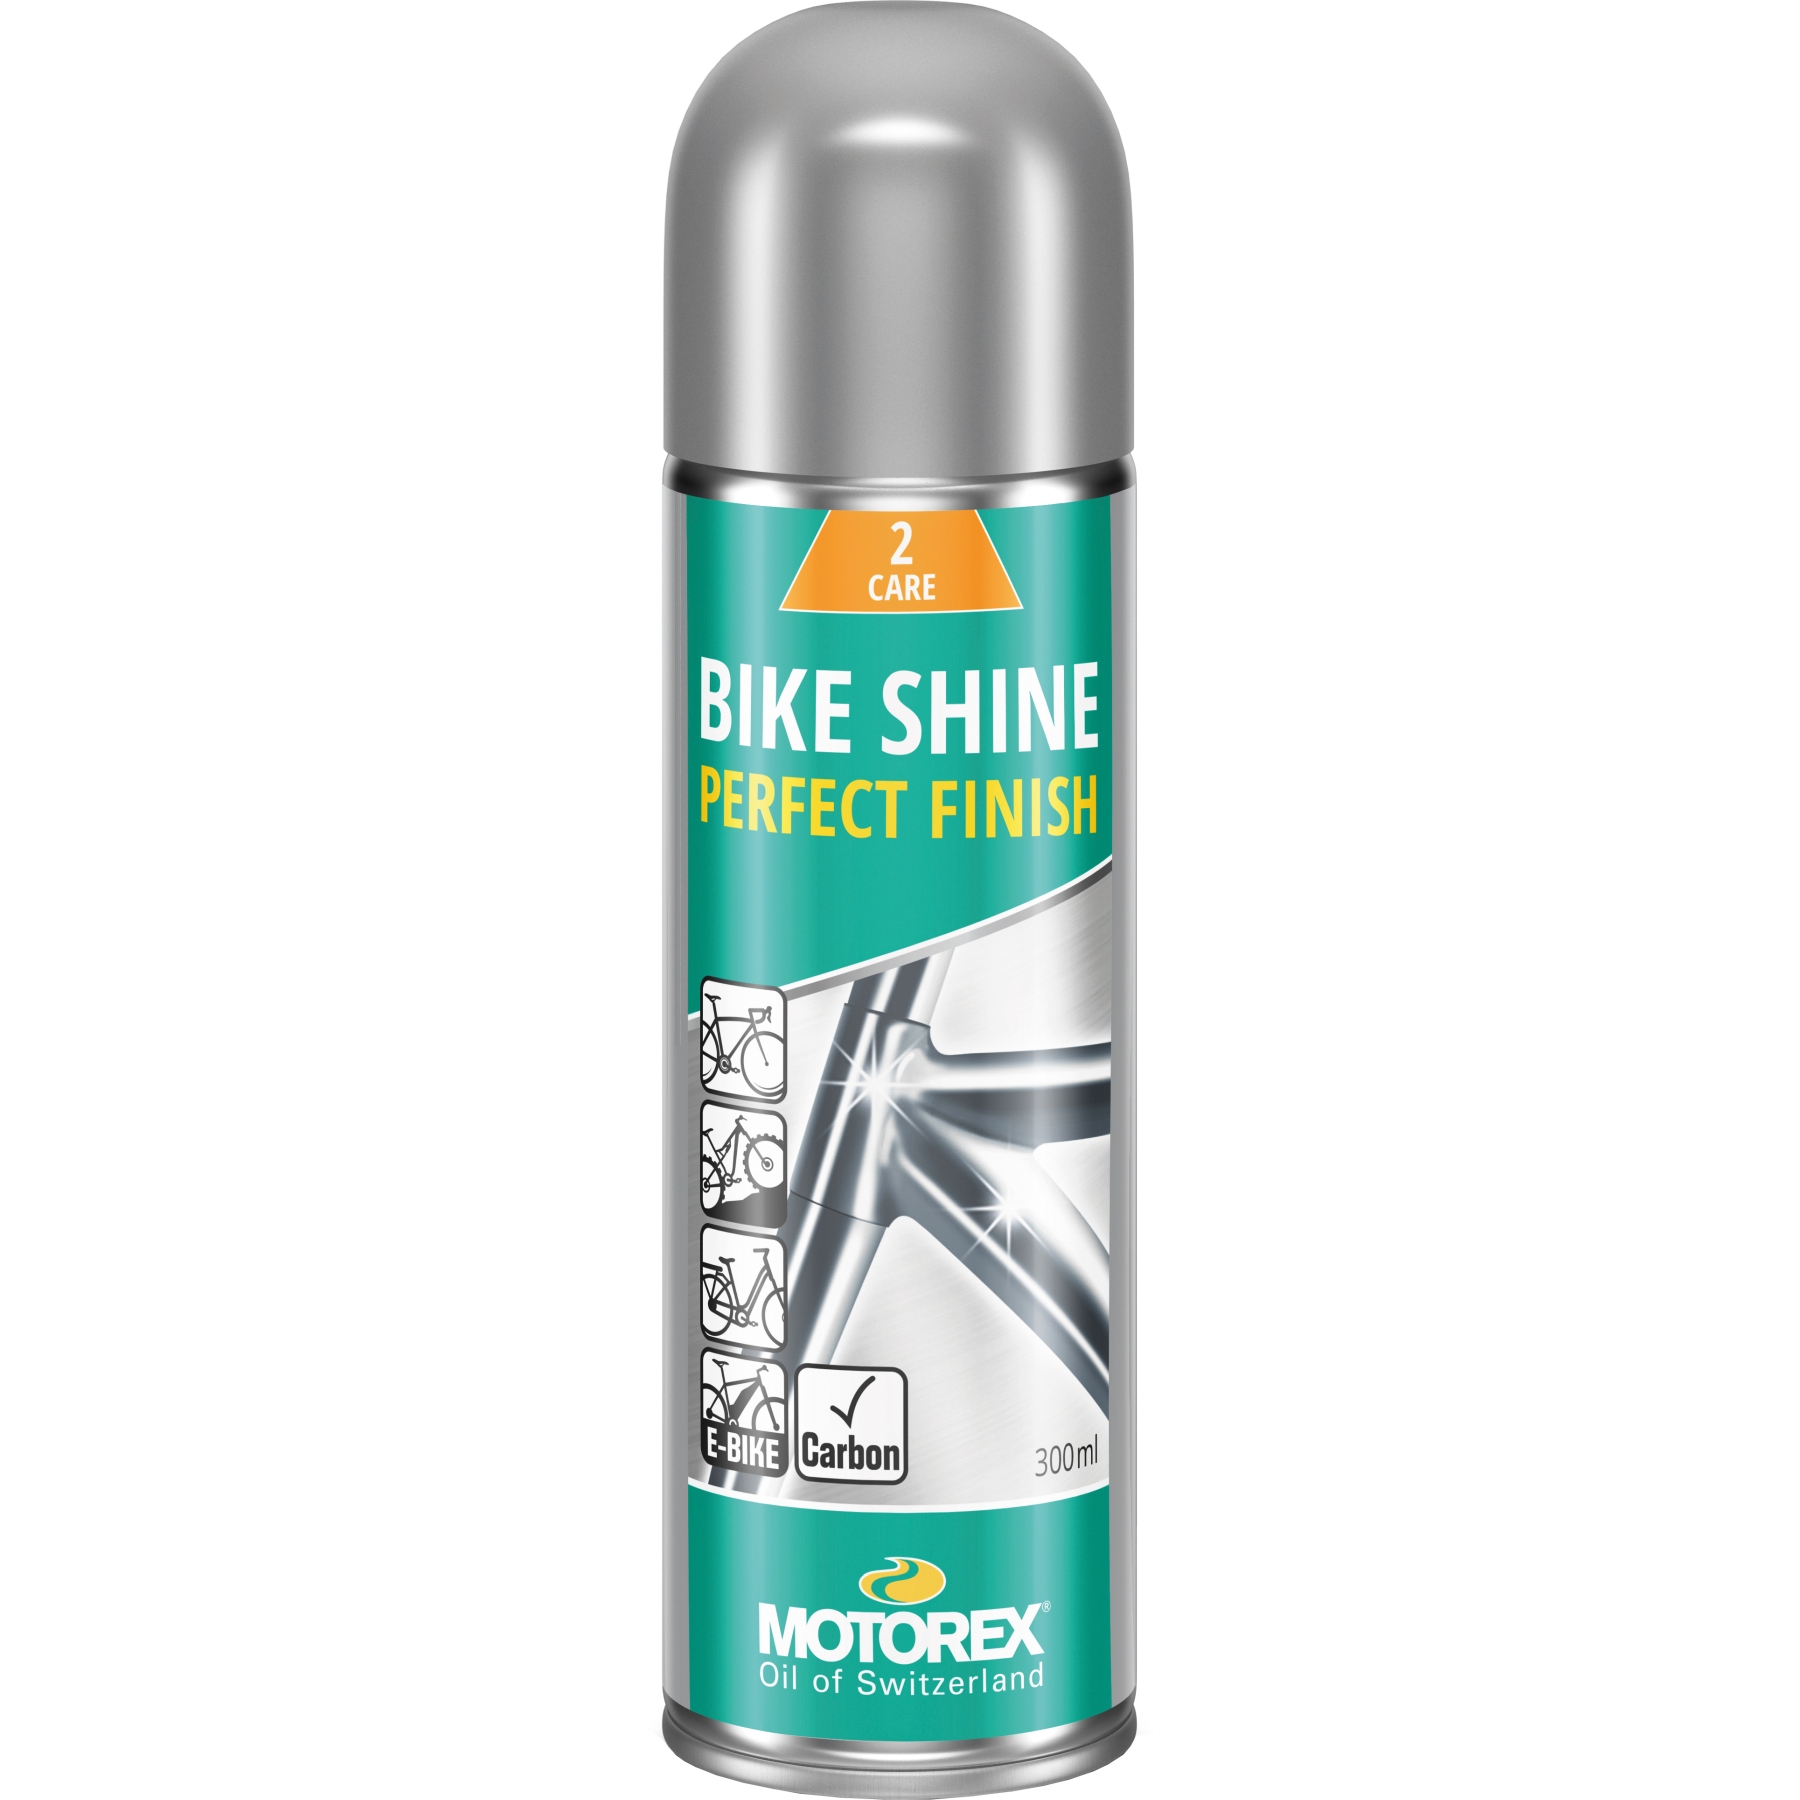 Immagine di Motorex Bike Shine - Care and Protection - Spray - 300ml